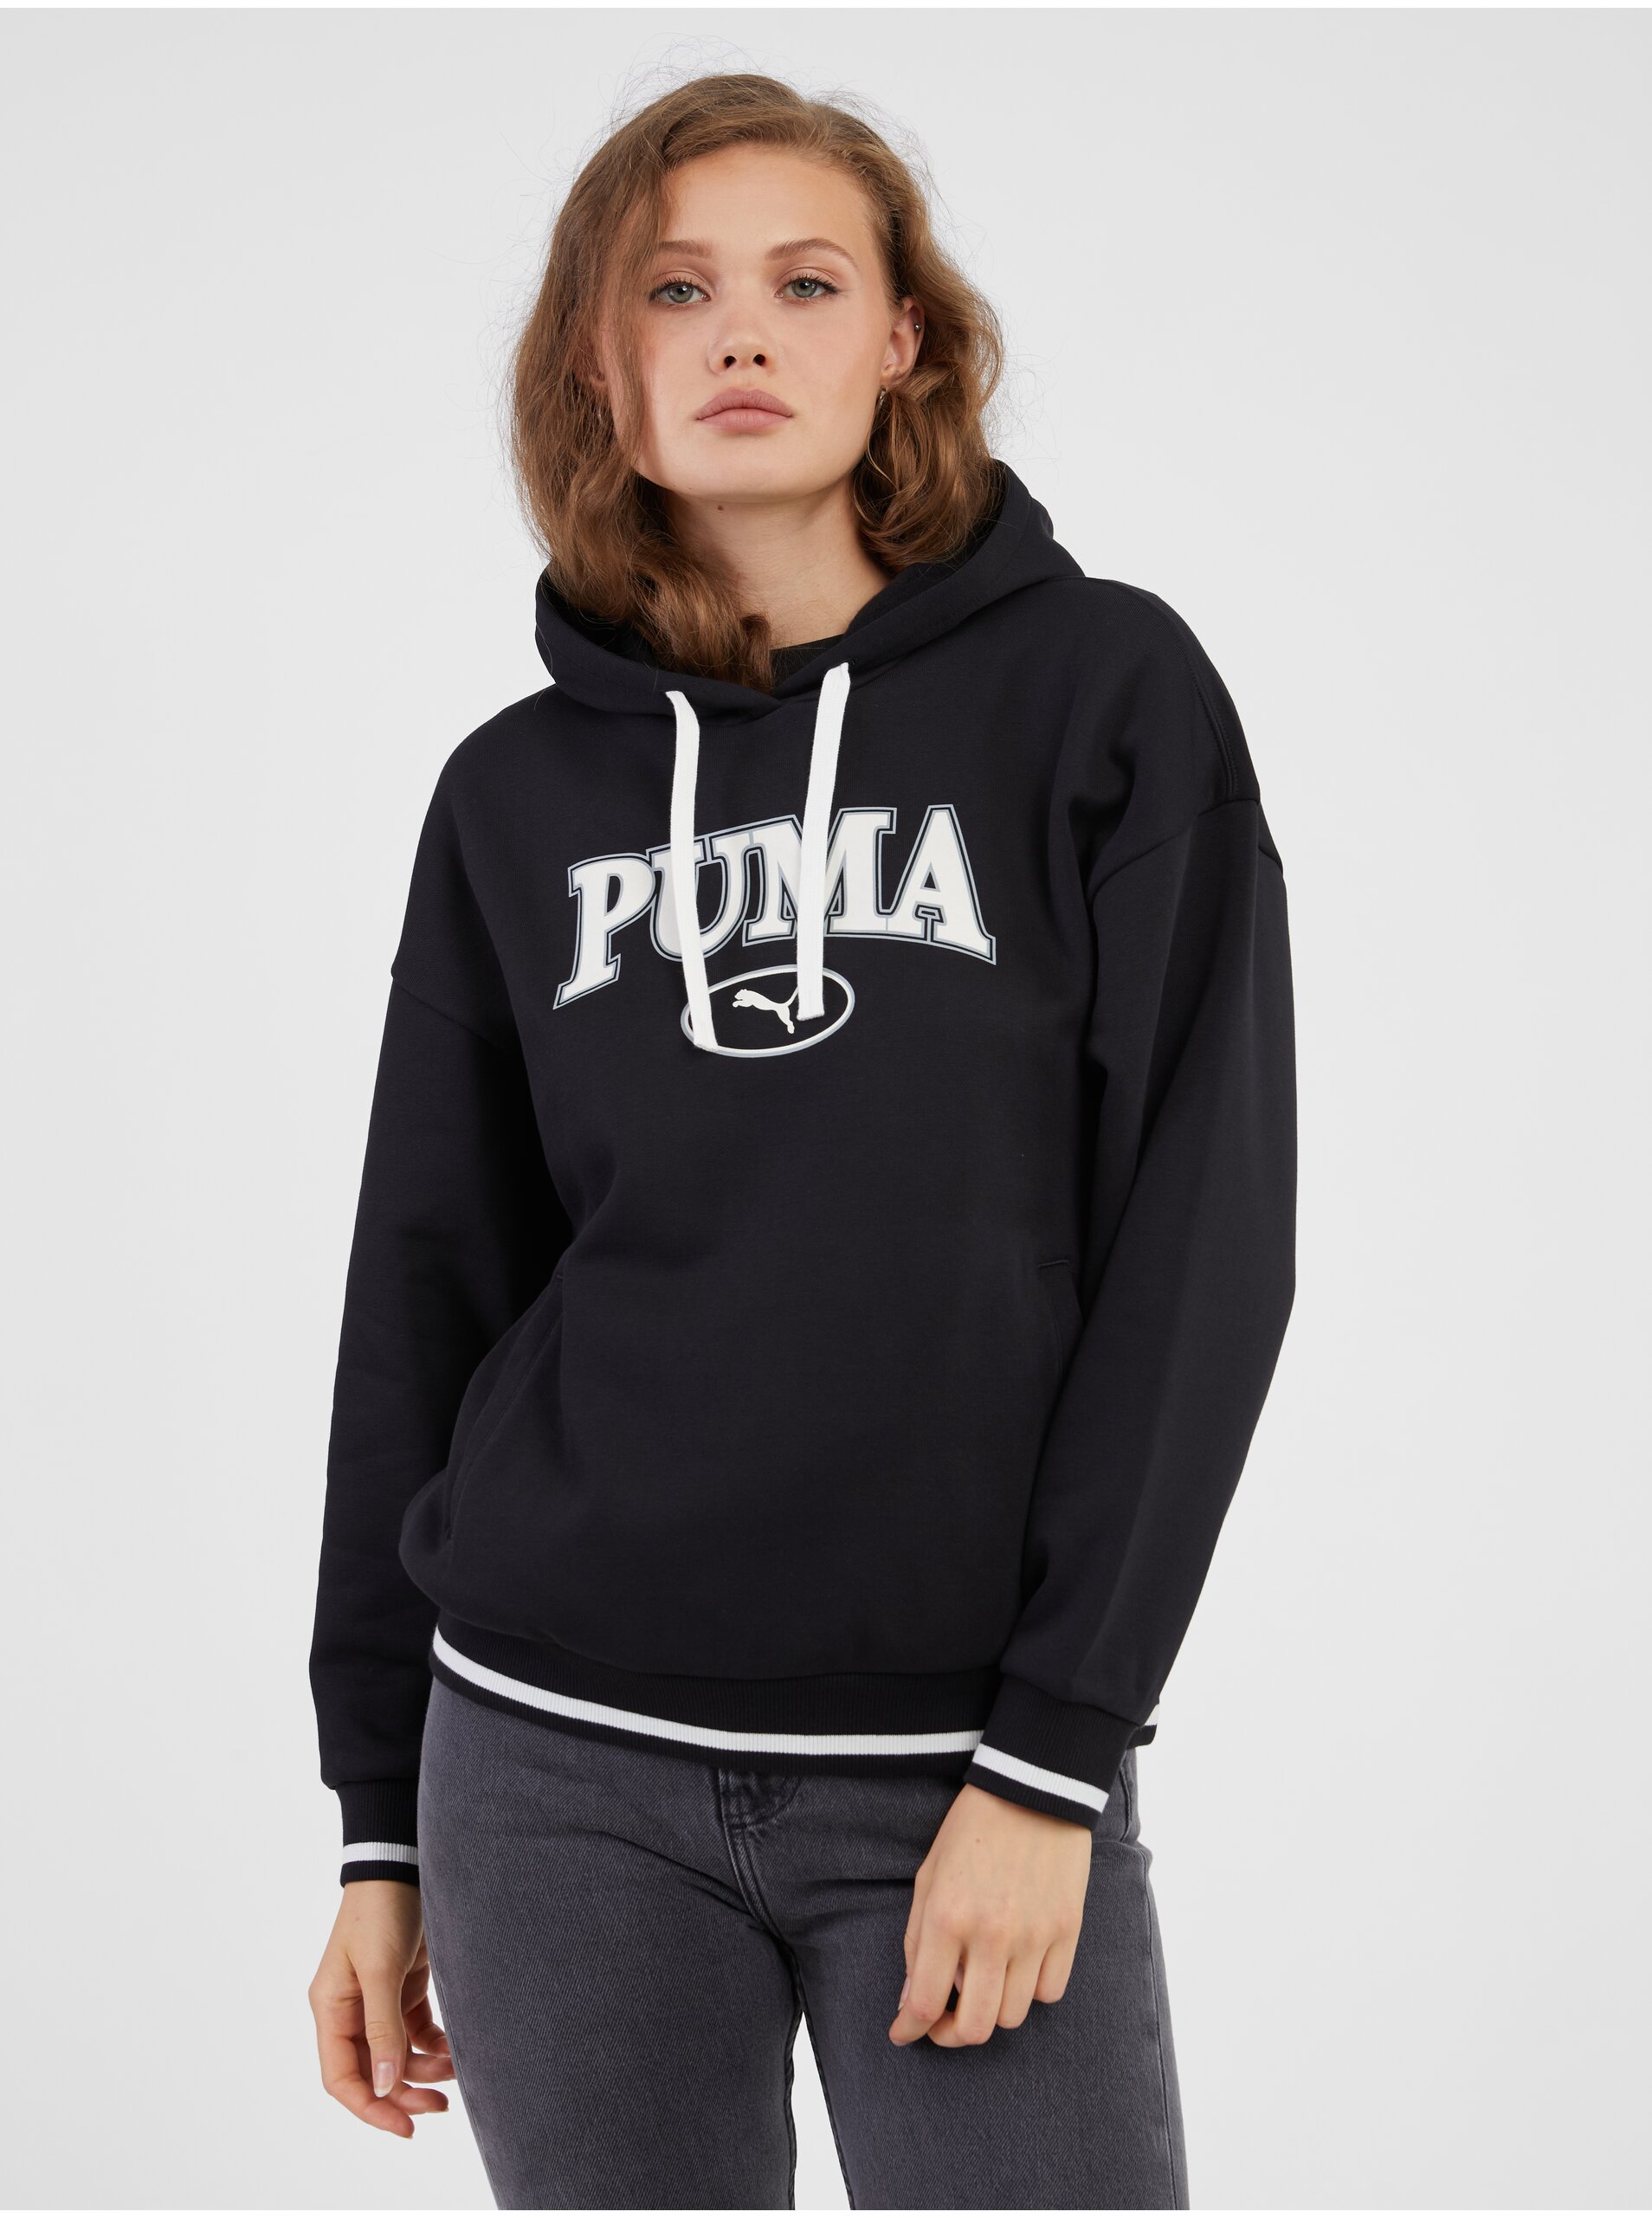 E-shop Černá dámská mikina s kapucí Puma Squad